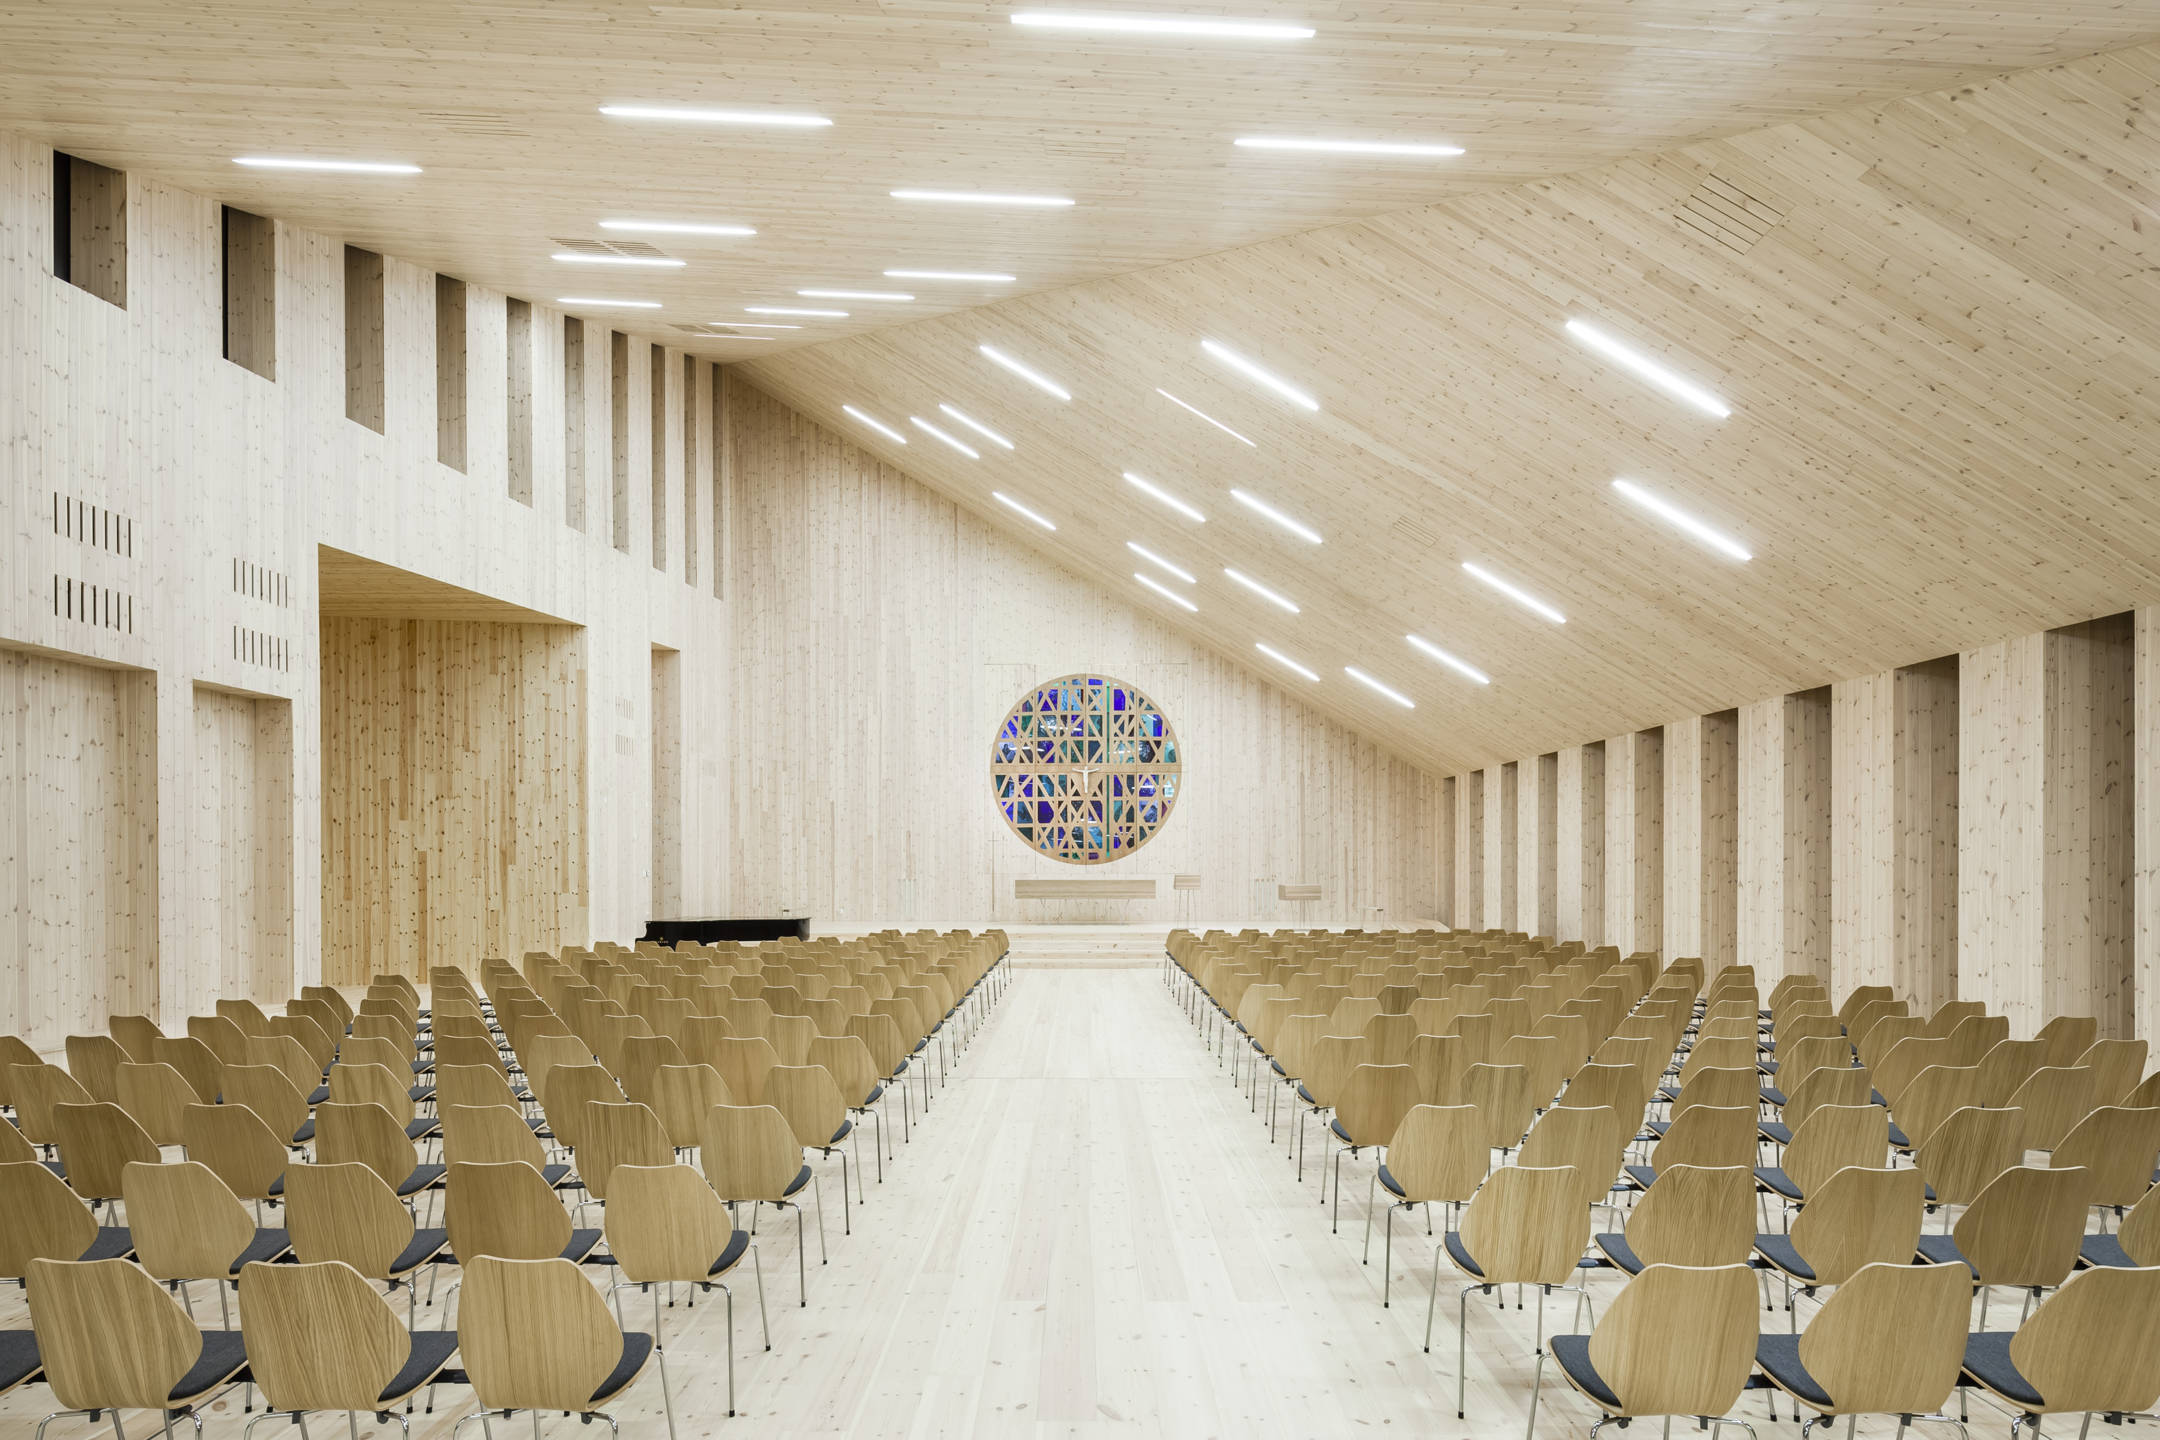 Anche la chiesa di Knarvik dispone di un pianoforte. Dietro questo si apre una nicchia che favorisce la proiezione del suono nell'aula. (foto Hundven Clements)